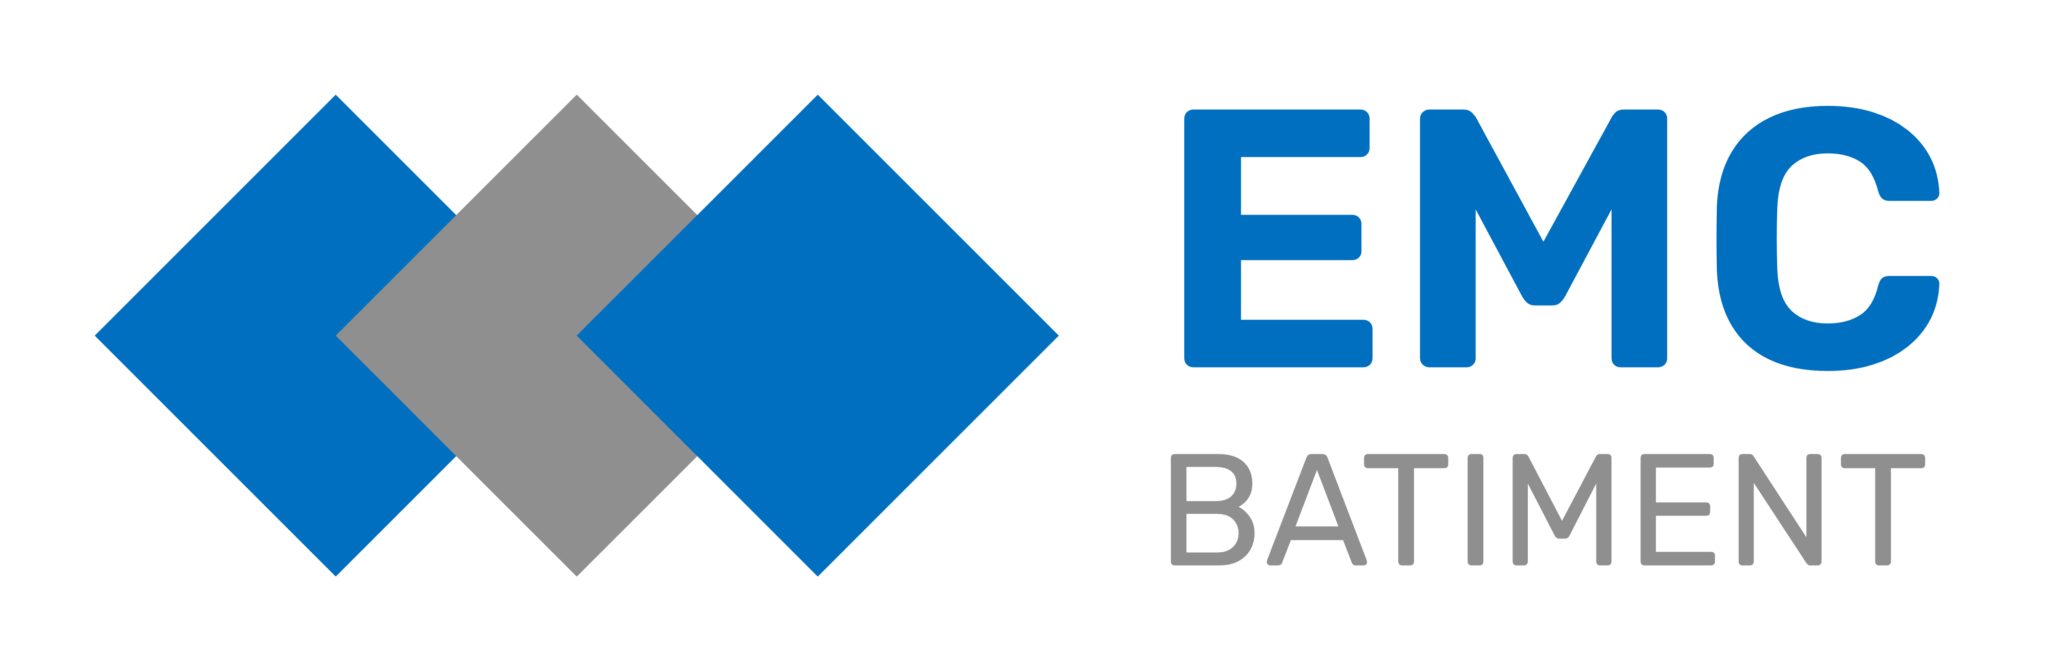 Logo de EMC BATIMENT, société de travaux en Fourniture et pose de carrelage